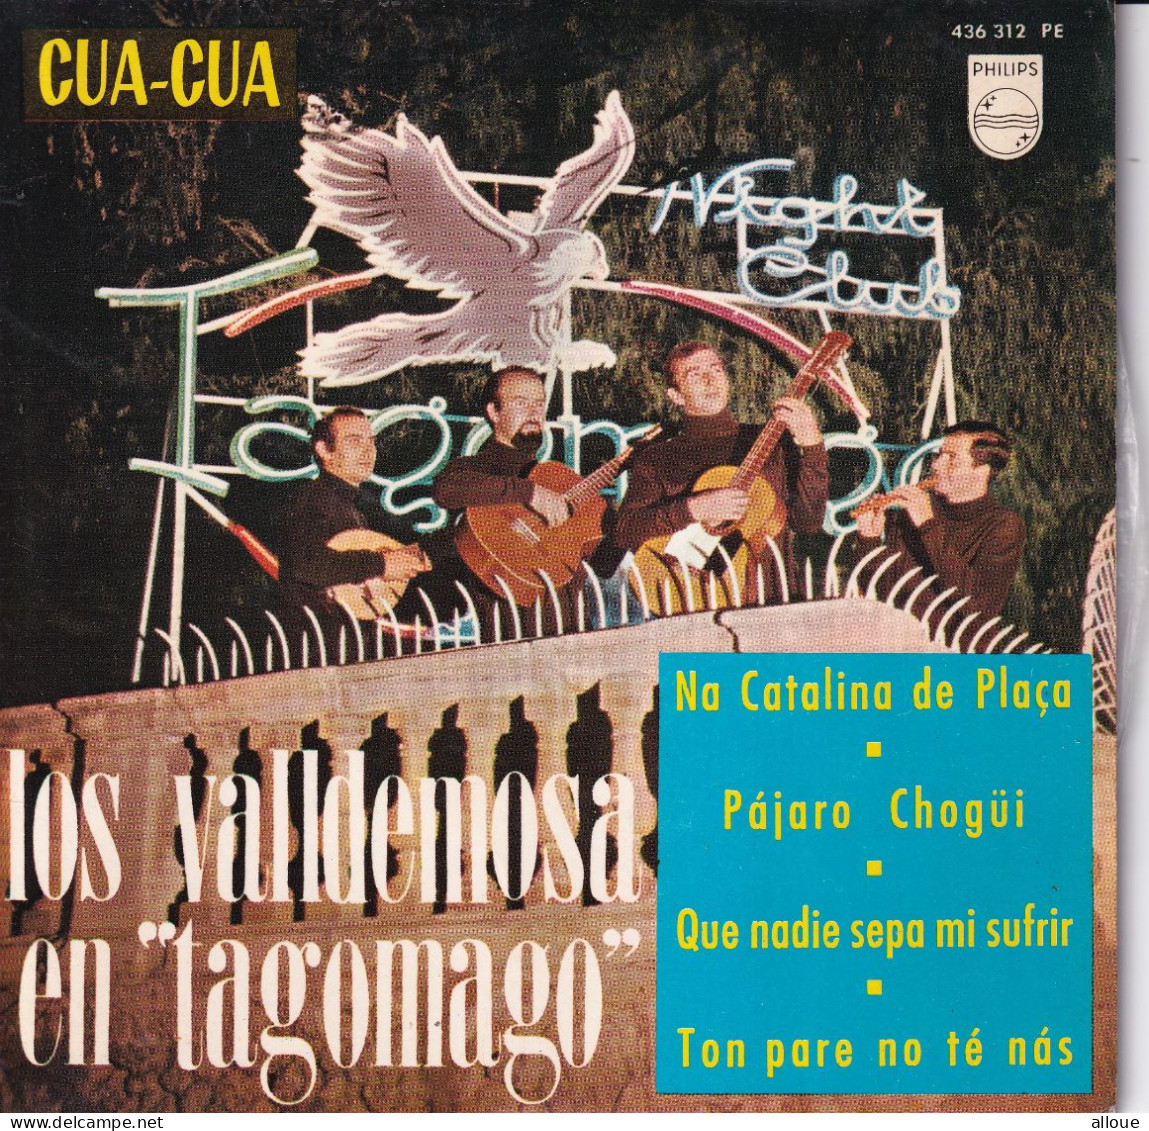 LOS VALLDEMOSA EN "TAGOMAGO" - ESPAGNE EP - Na Catalina De Plaça + 3 - Altri - Musica Spagnola